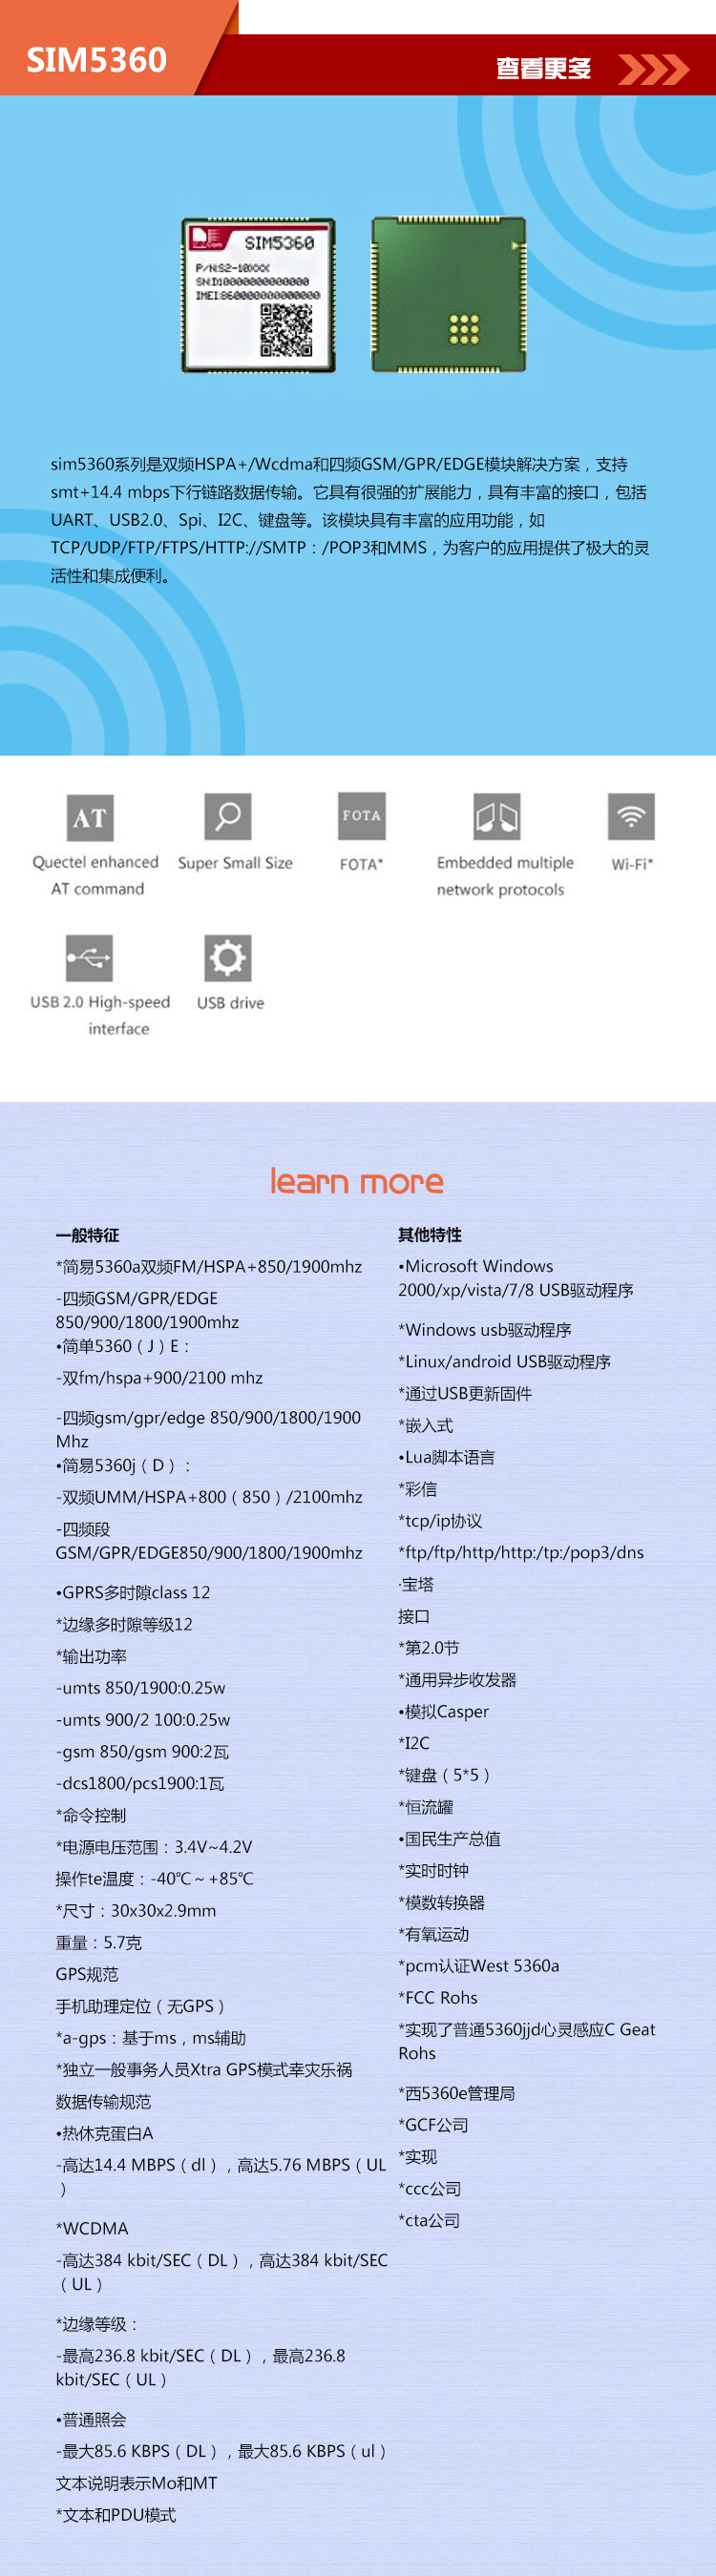 SIM5360中文.jpg